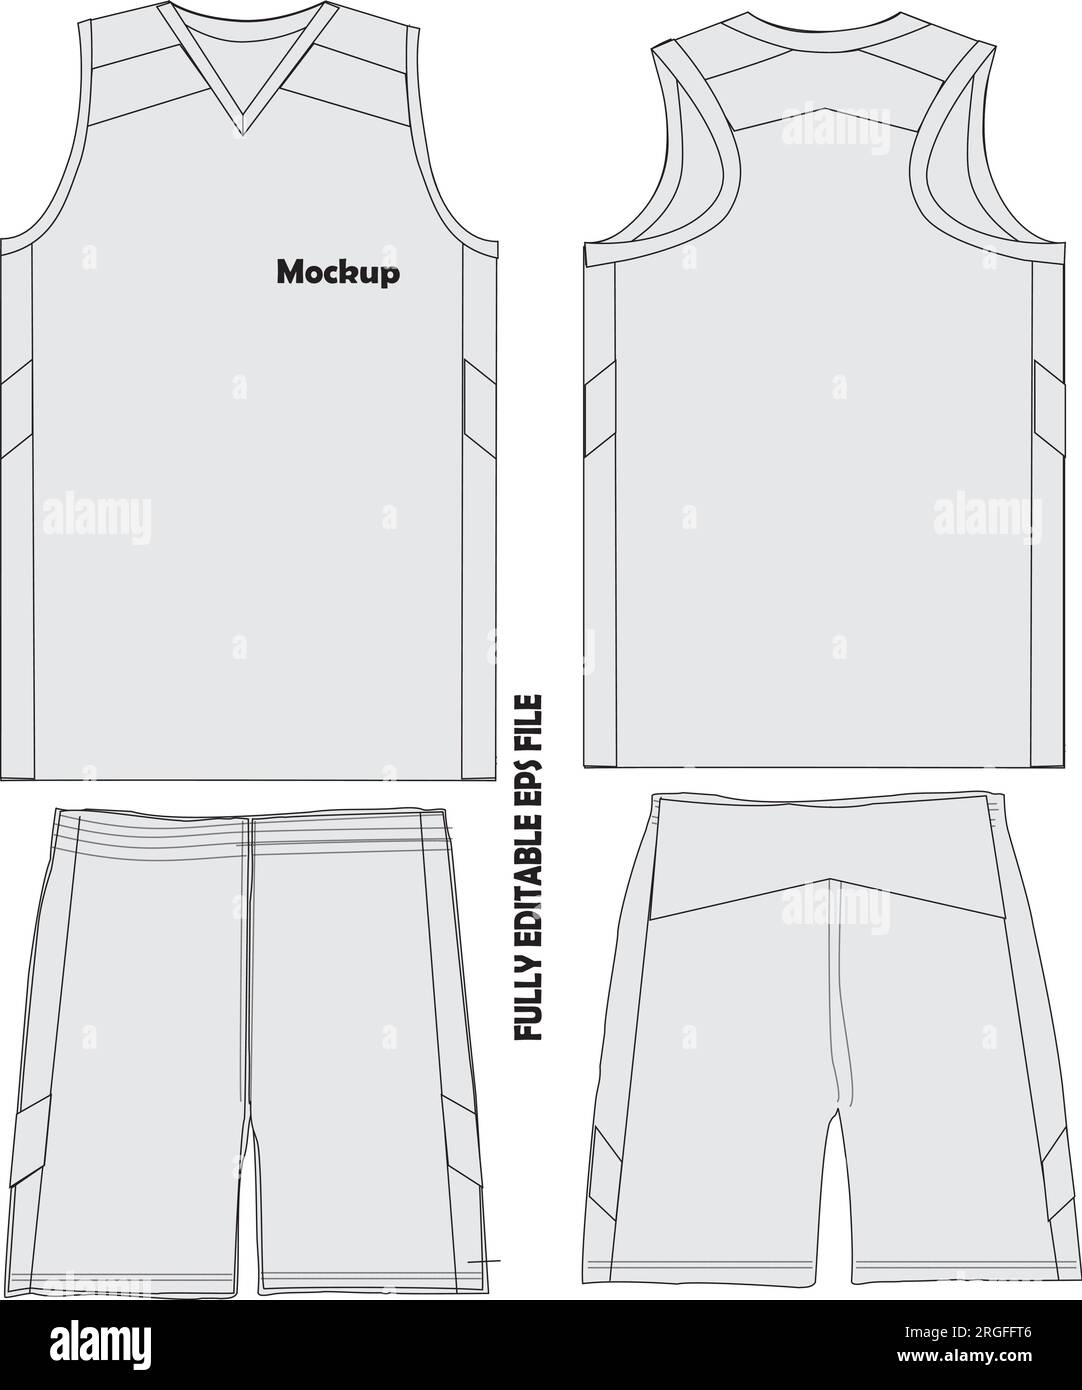 Maglie maglie da basket in uniforme Illustrazione Vettoriale